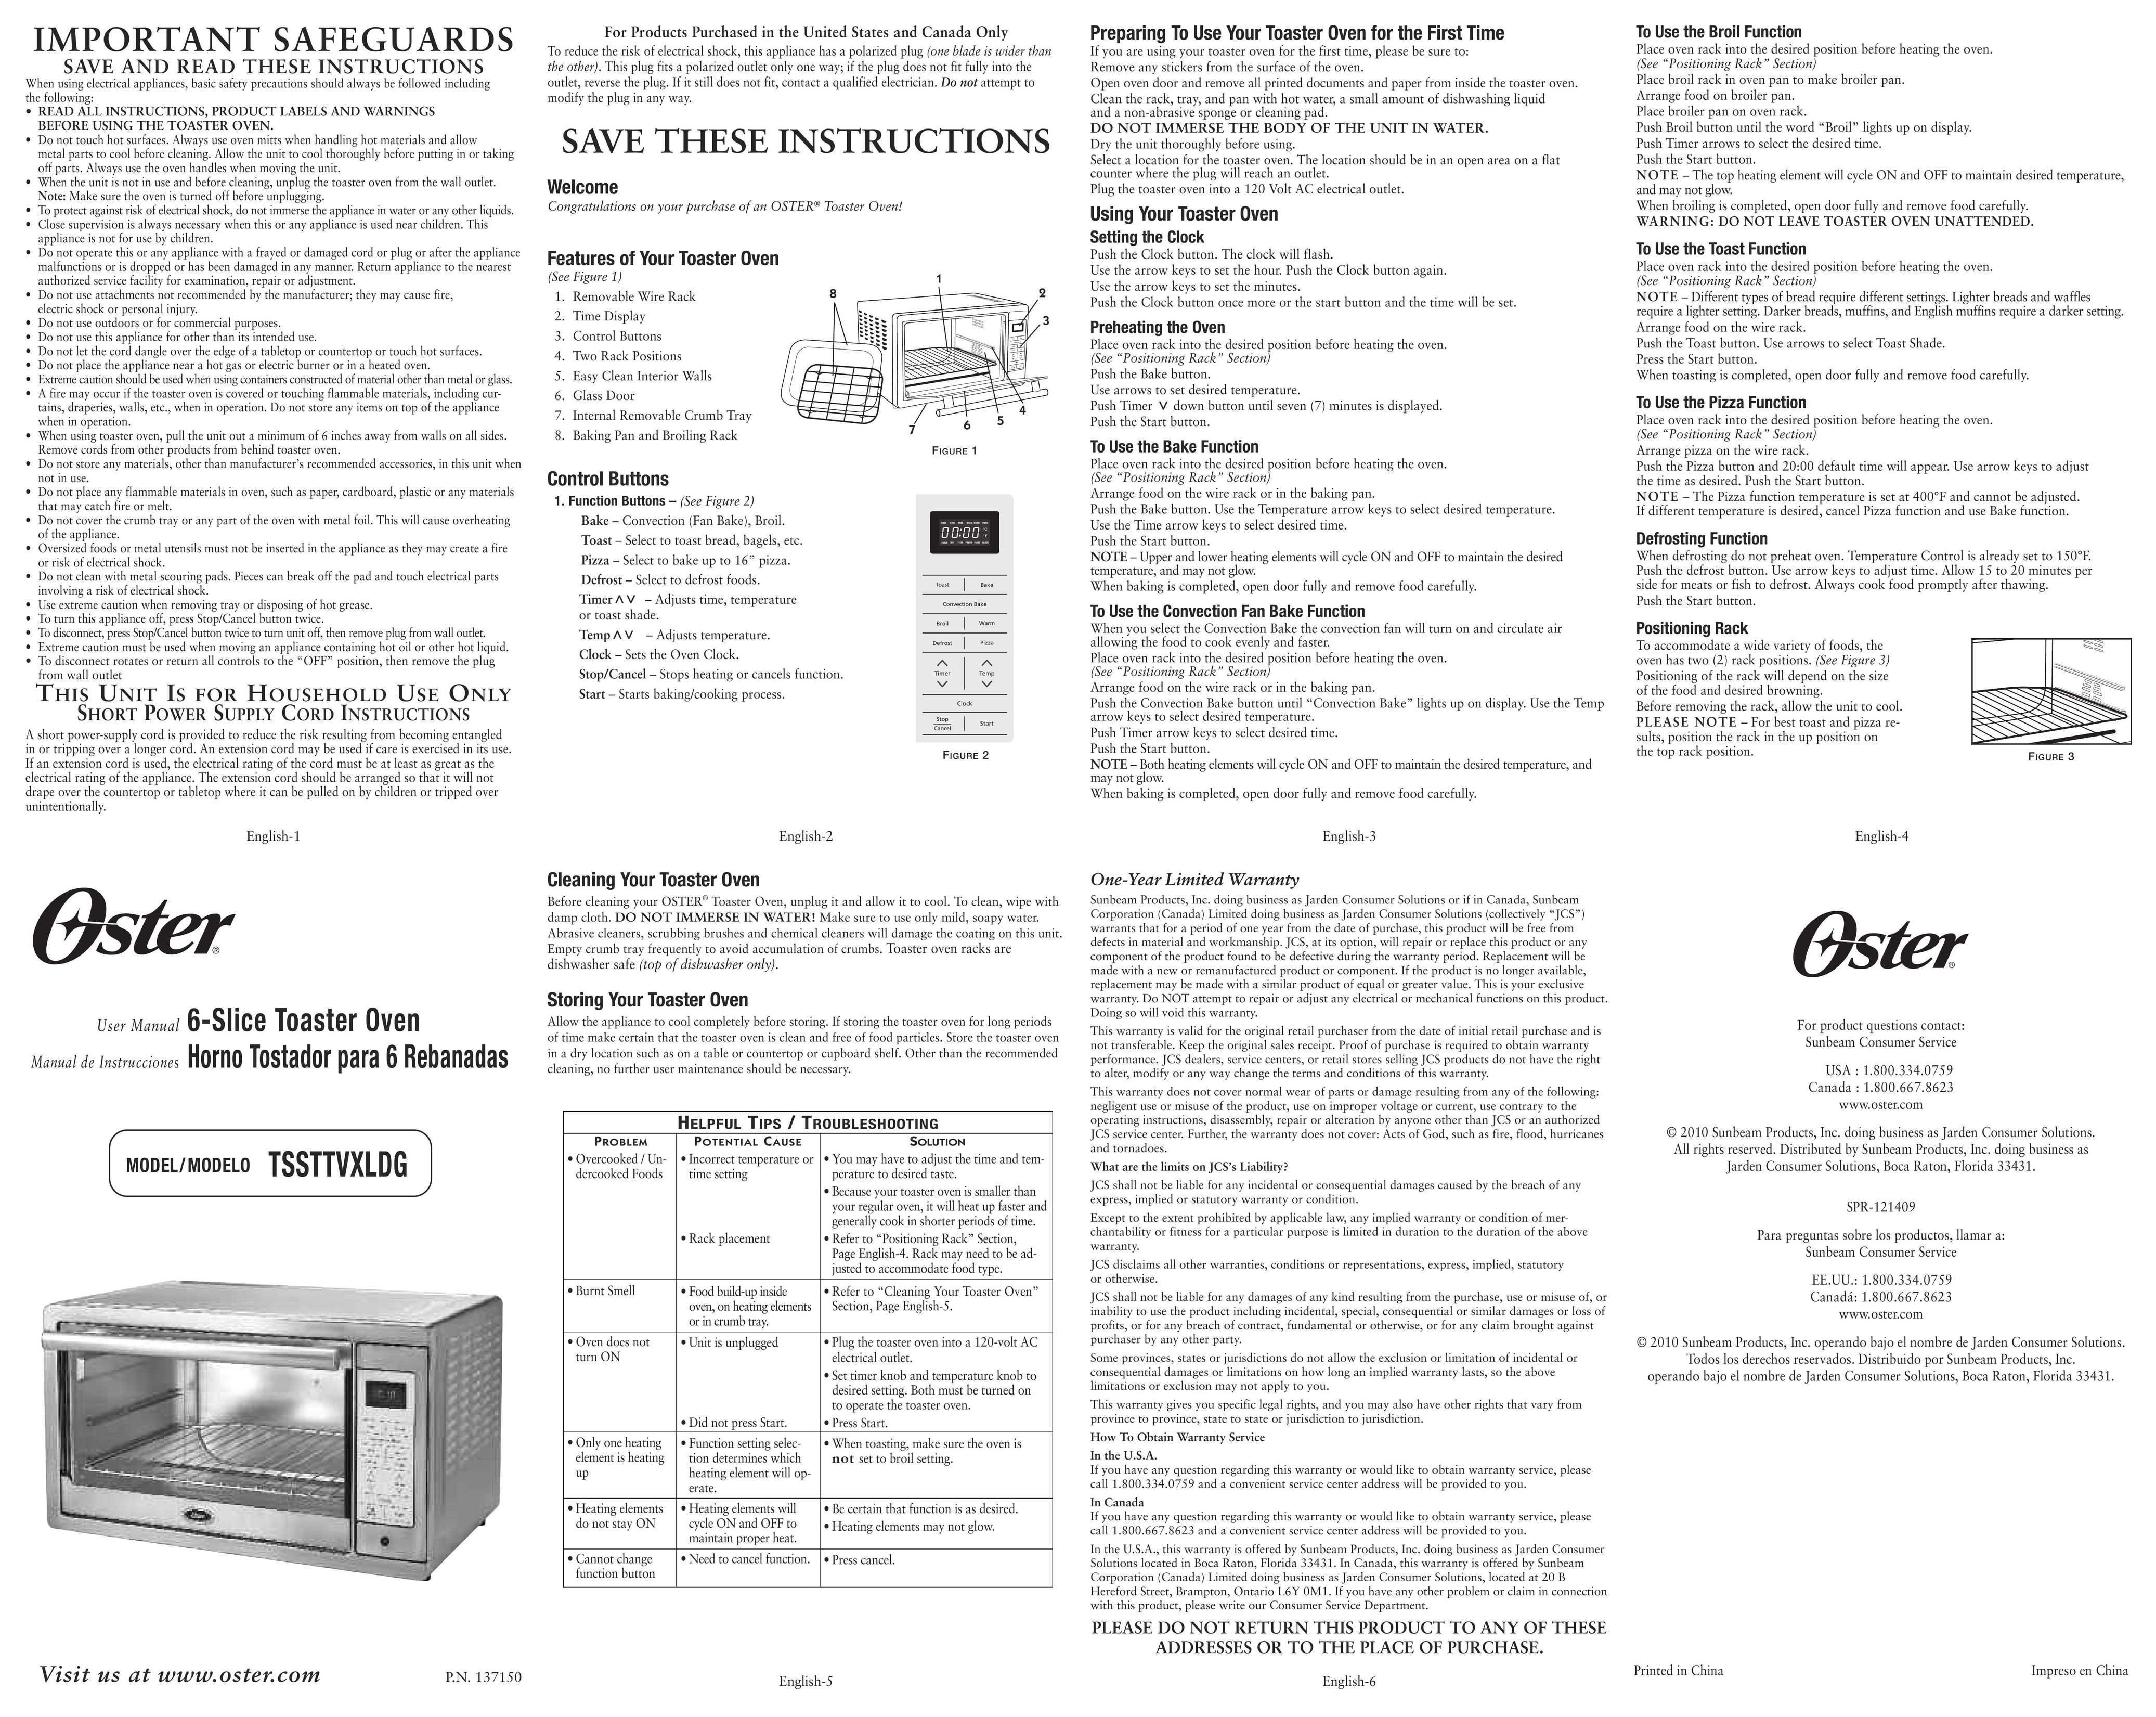 Oster TSSTTVXLDG Microwave Oven User Manual